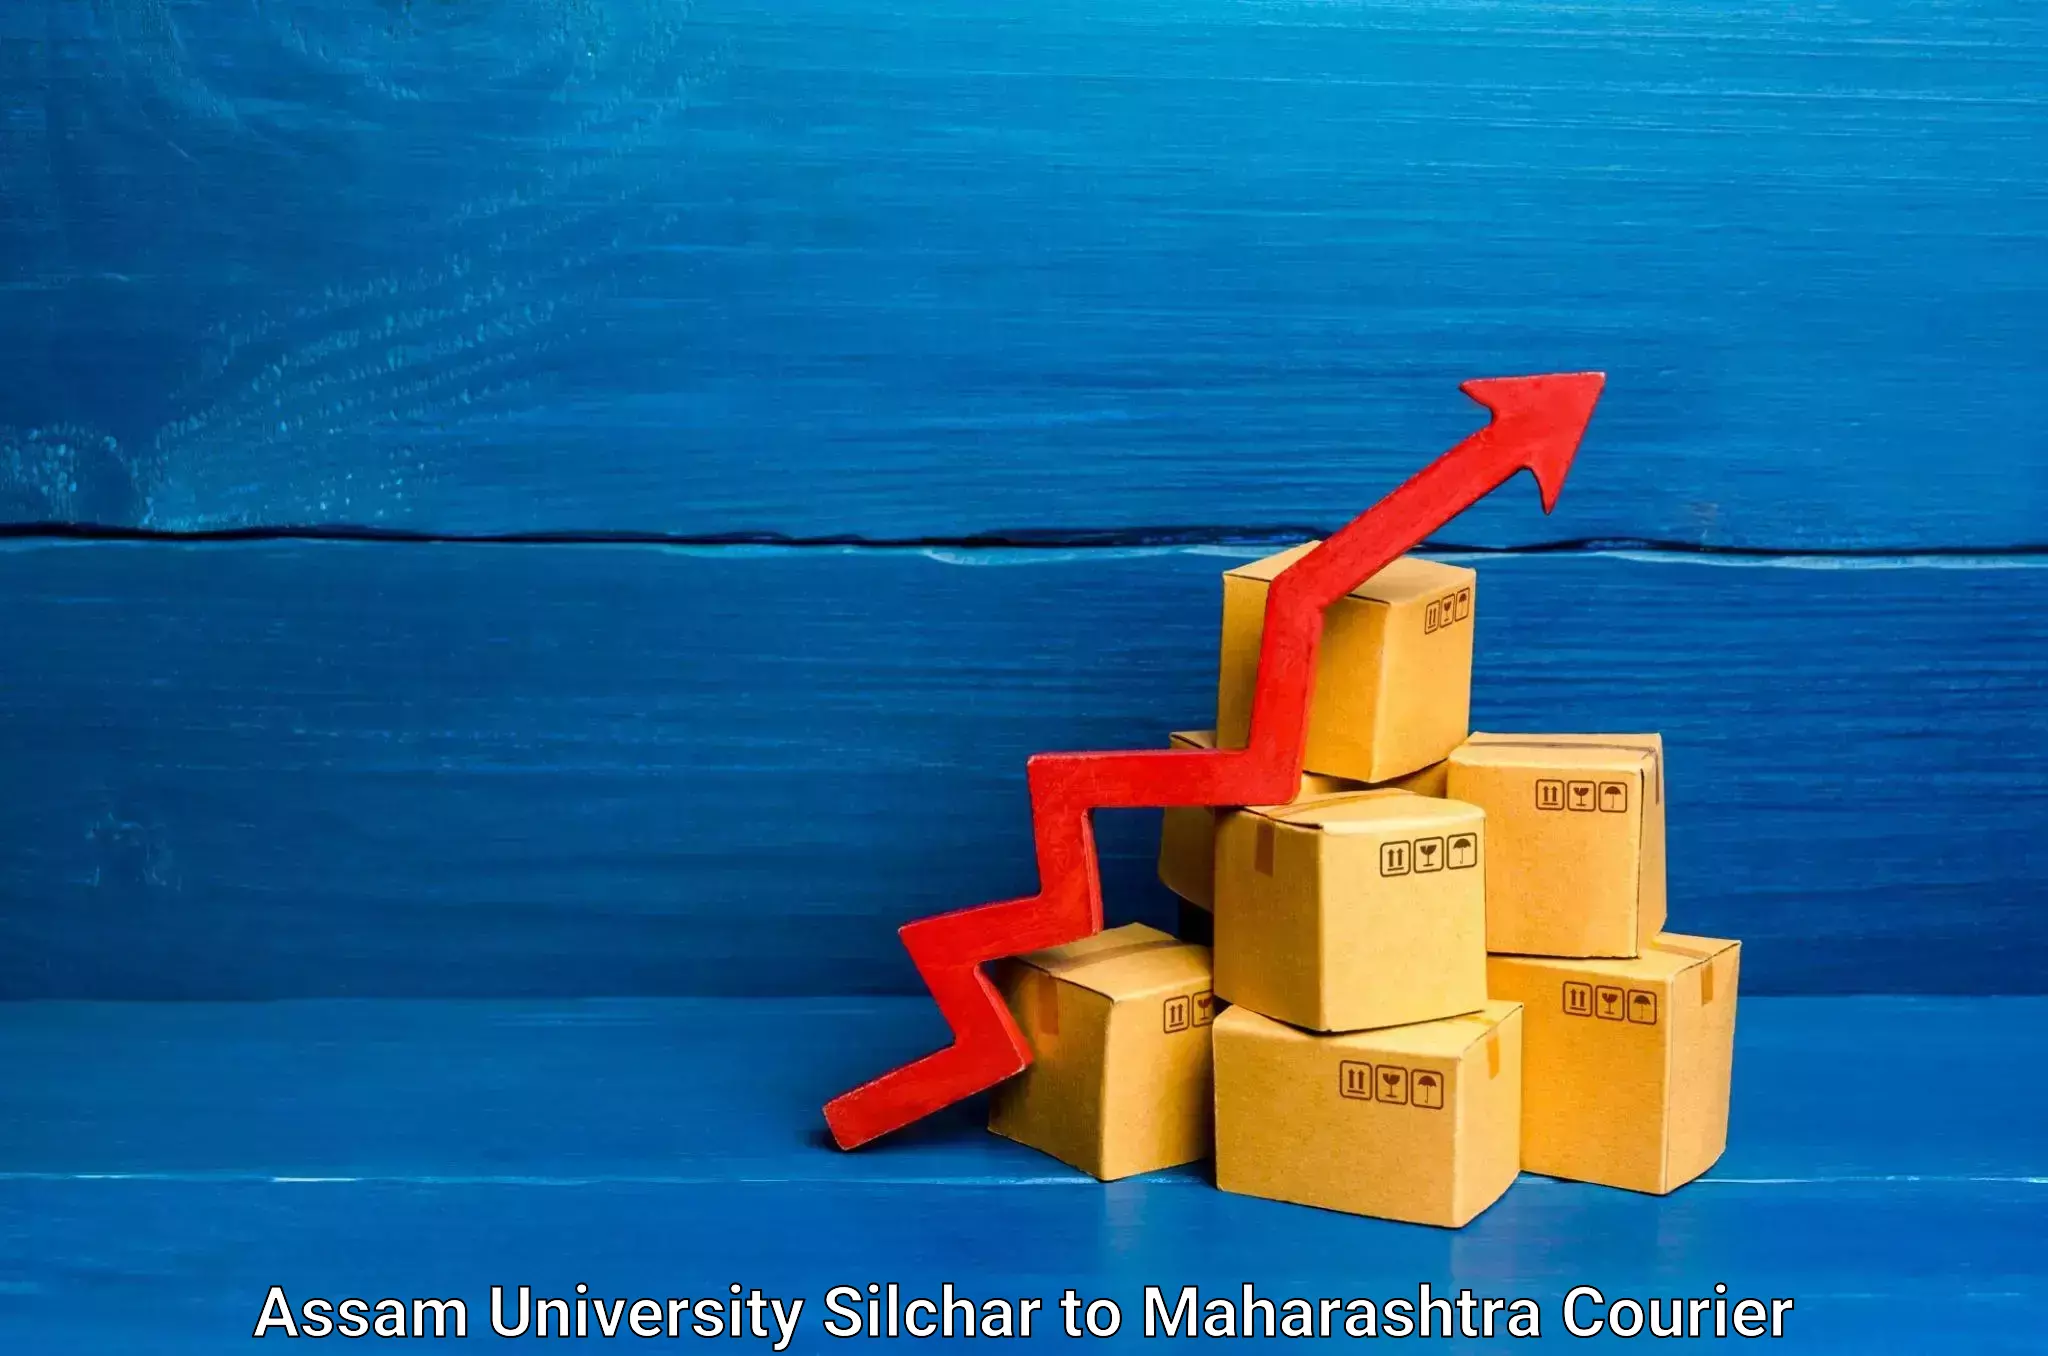 Reliable courier services Assam University Silchar to Aurangabad